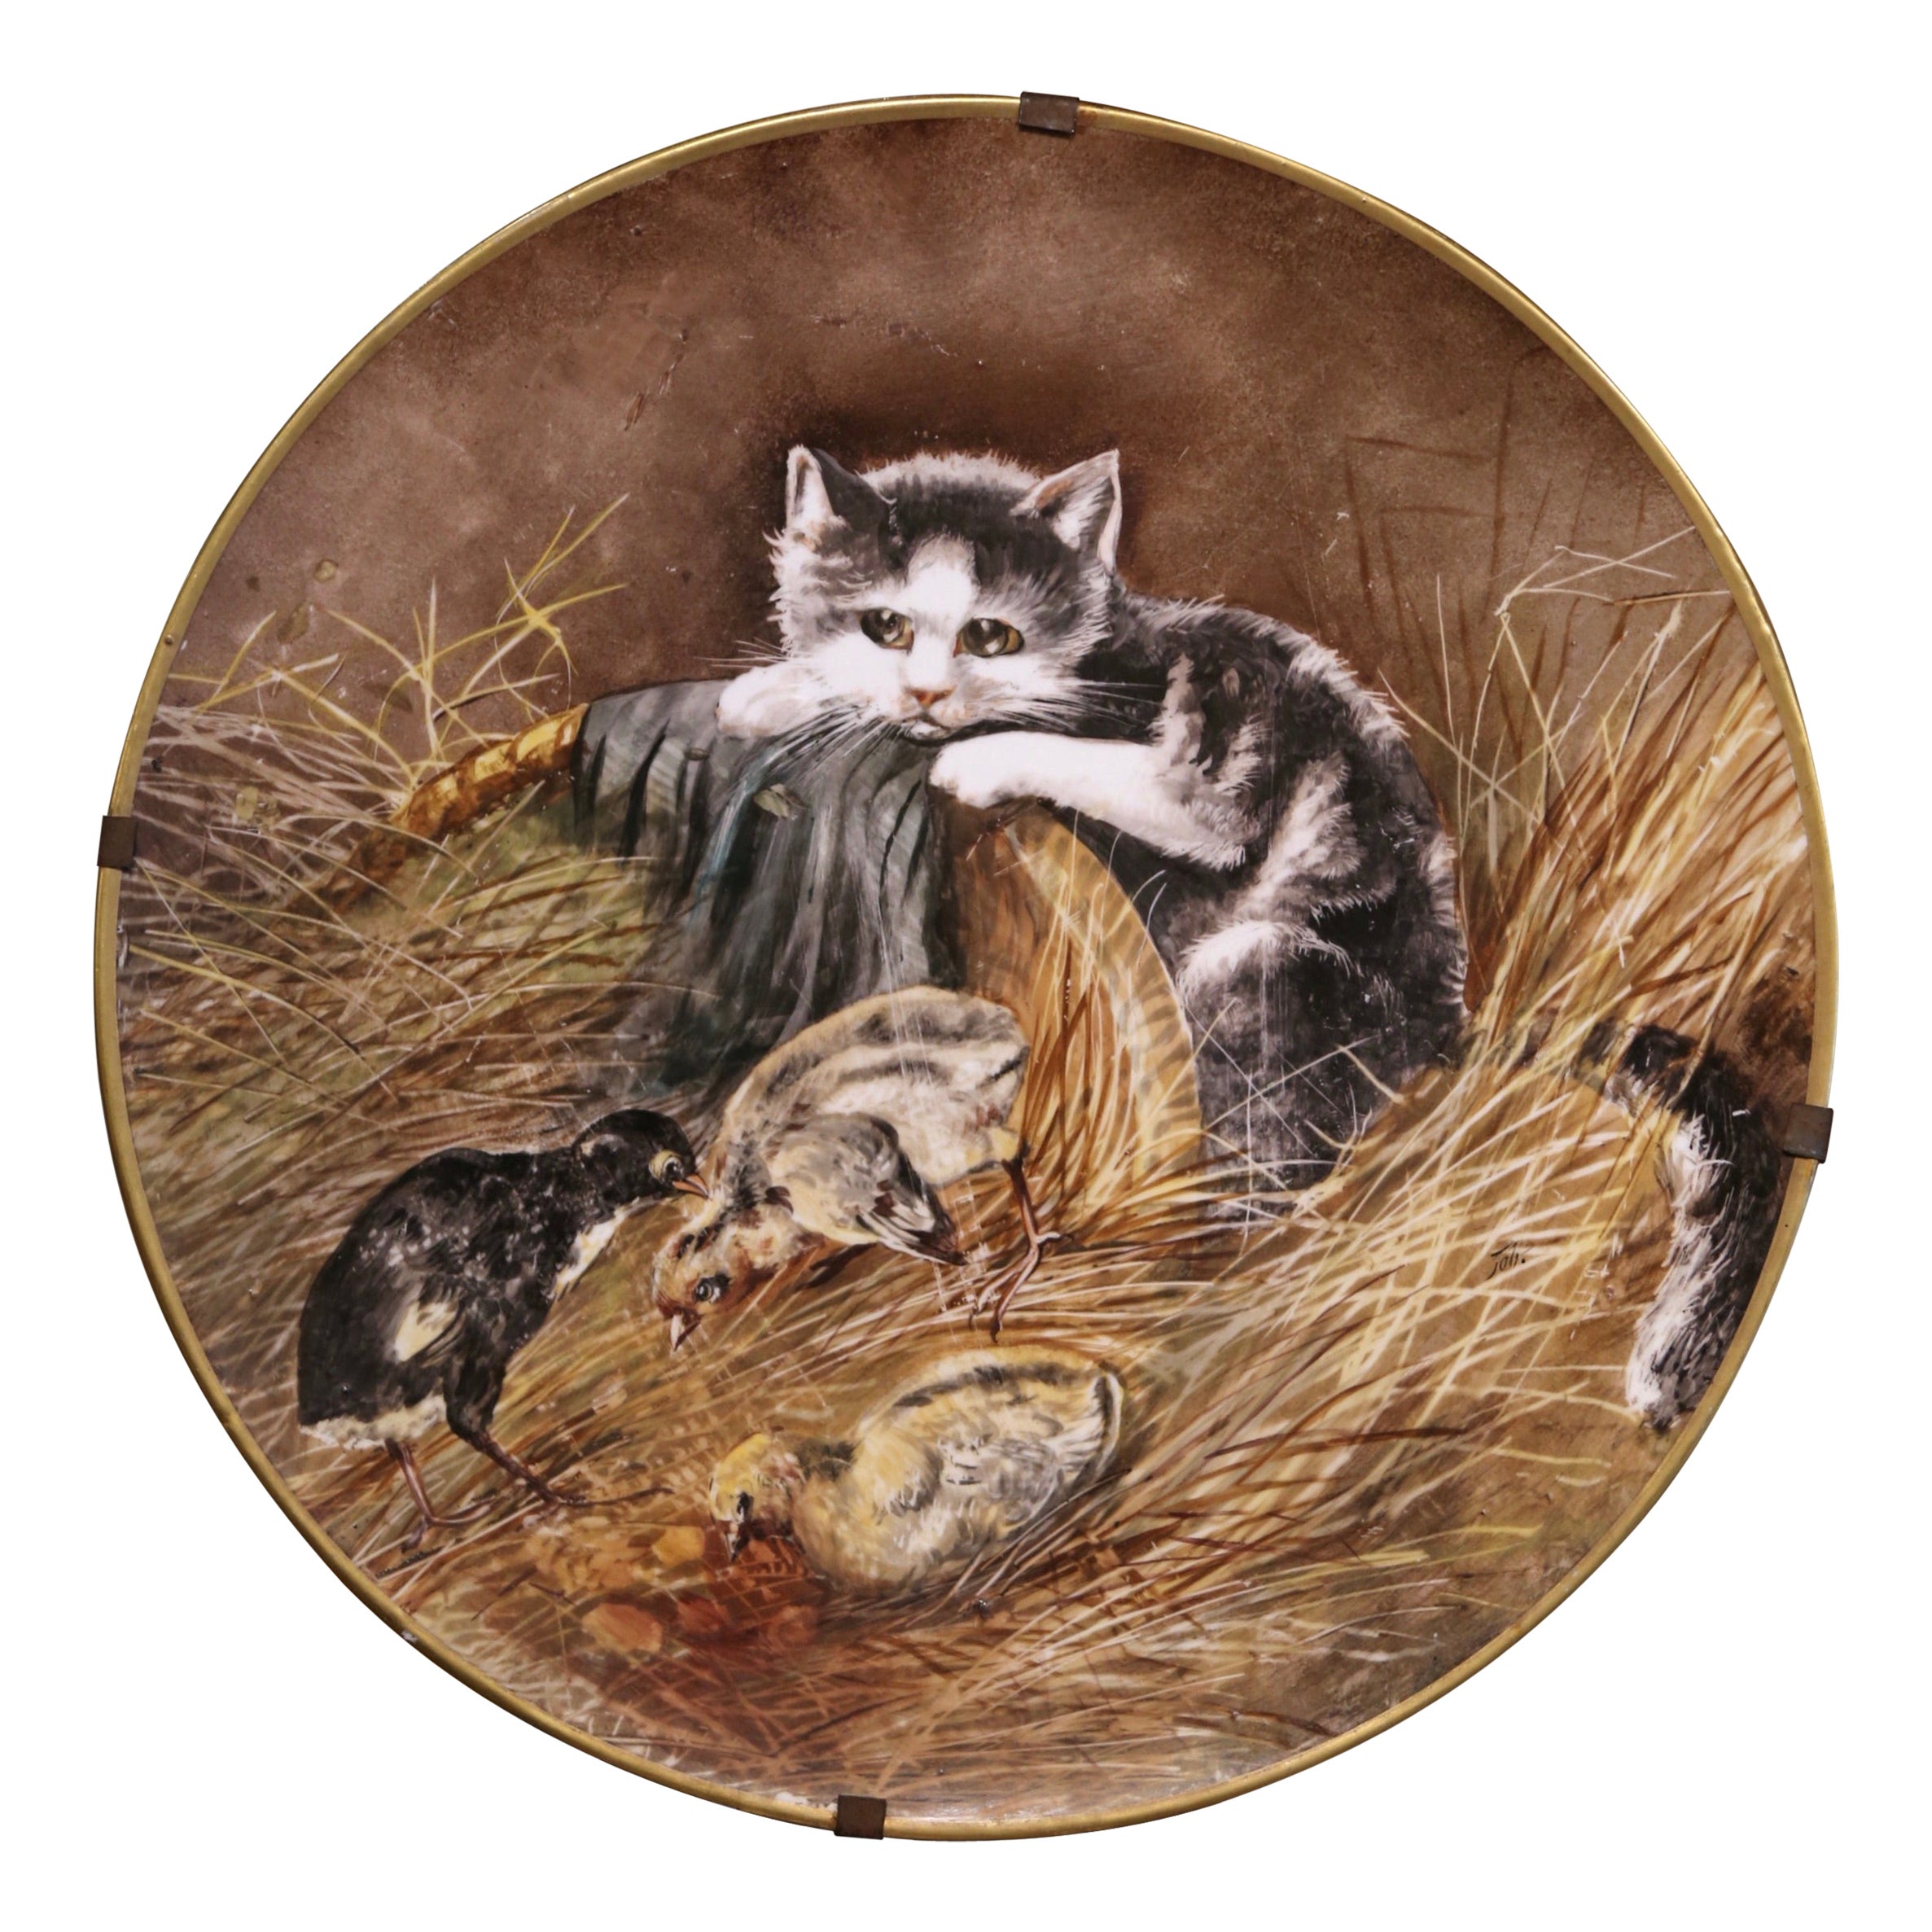  Plat mural en porcelaine peint à la main du 19ème siècle avec chat estampillé J.P. France